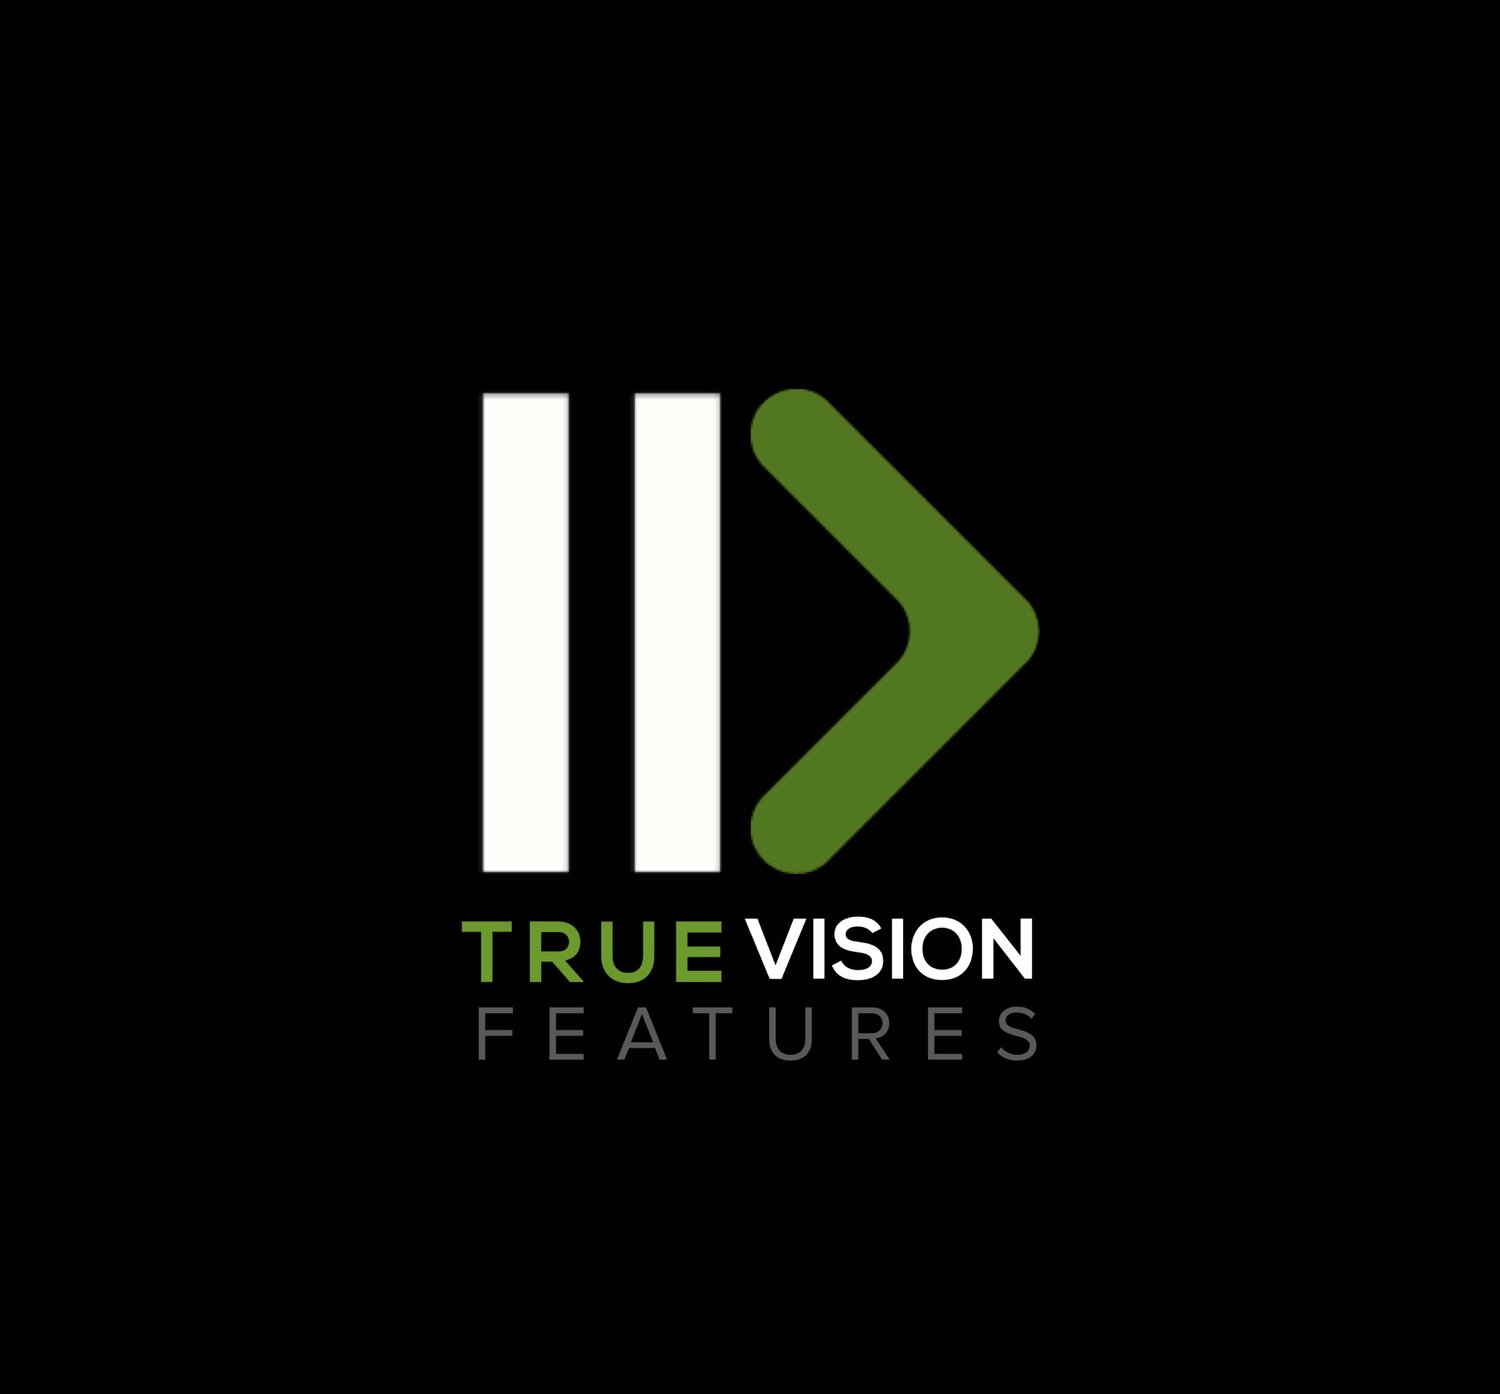 True Vision Features